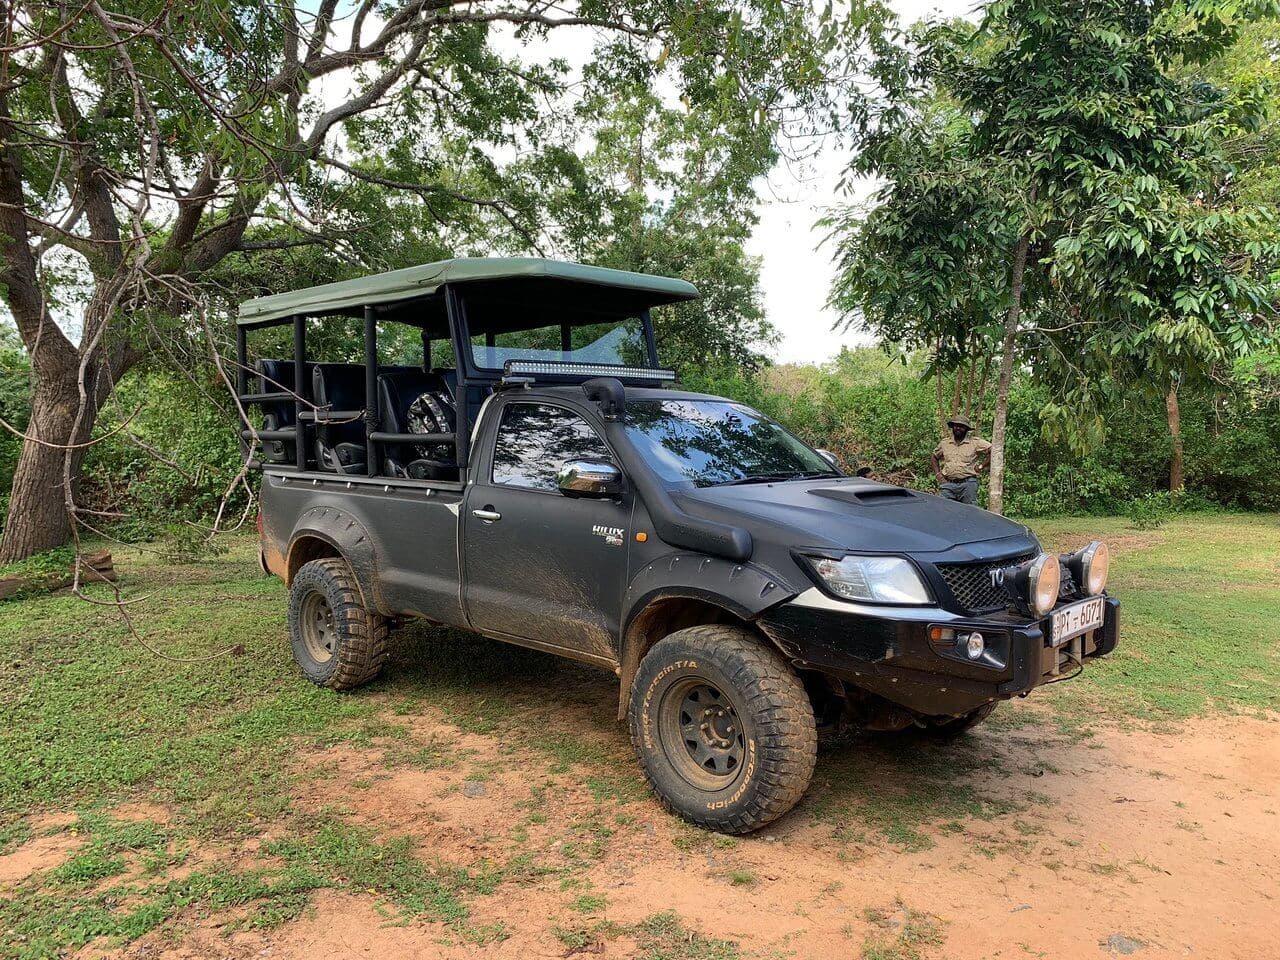 A Toyota cab upgraded into a safari vehicle used in Yala national park safari, Sri Lanka.